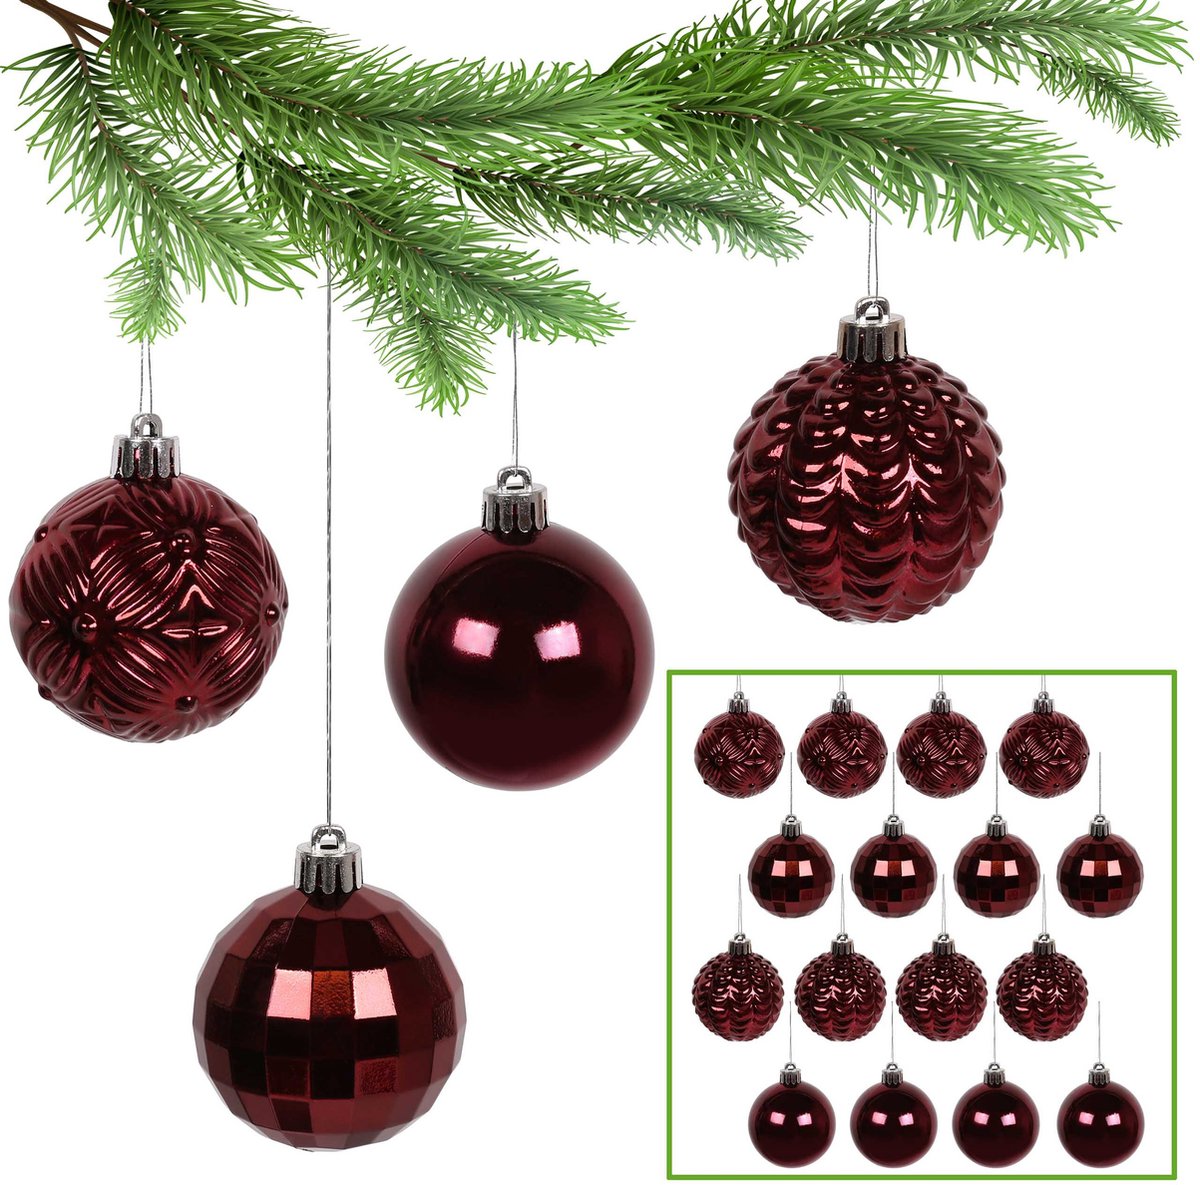 Maroon kerstballen, kerstballen set, kerstboom ornamenten 6cm, 16 stuks.